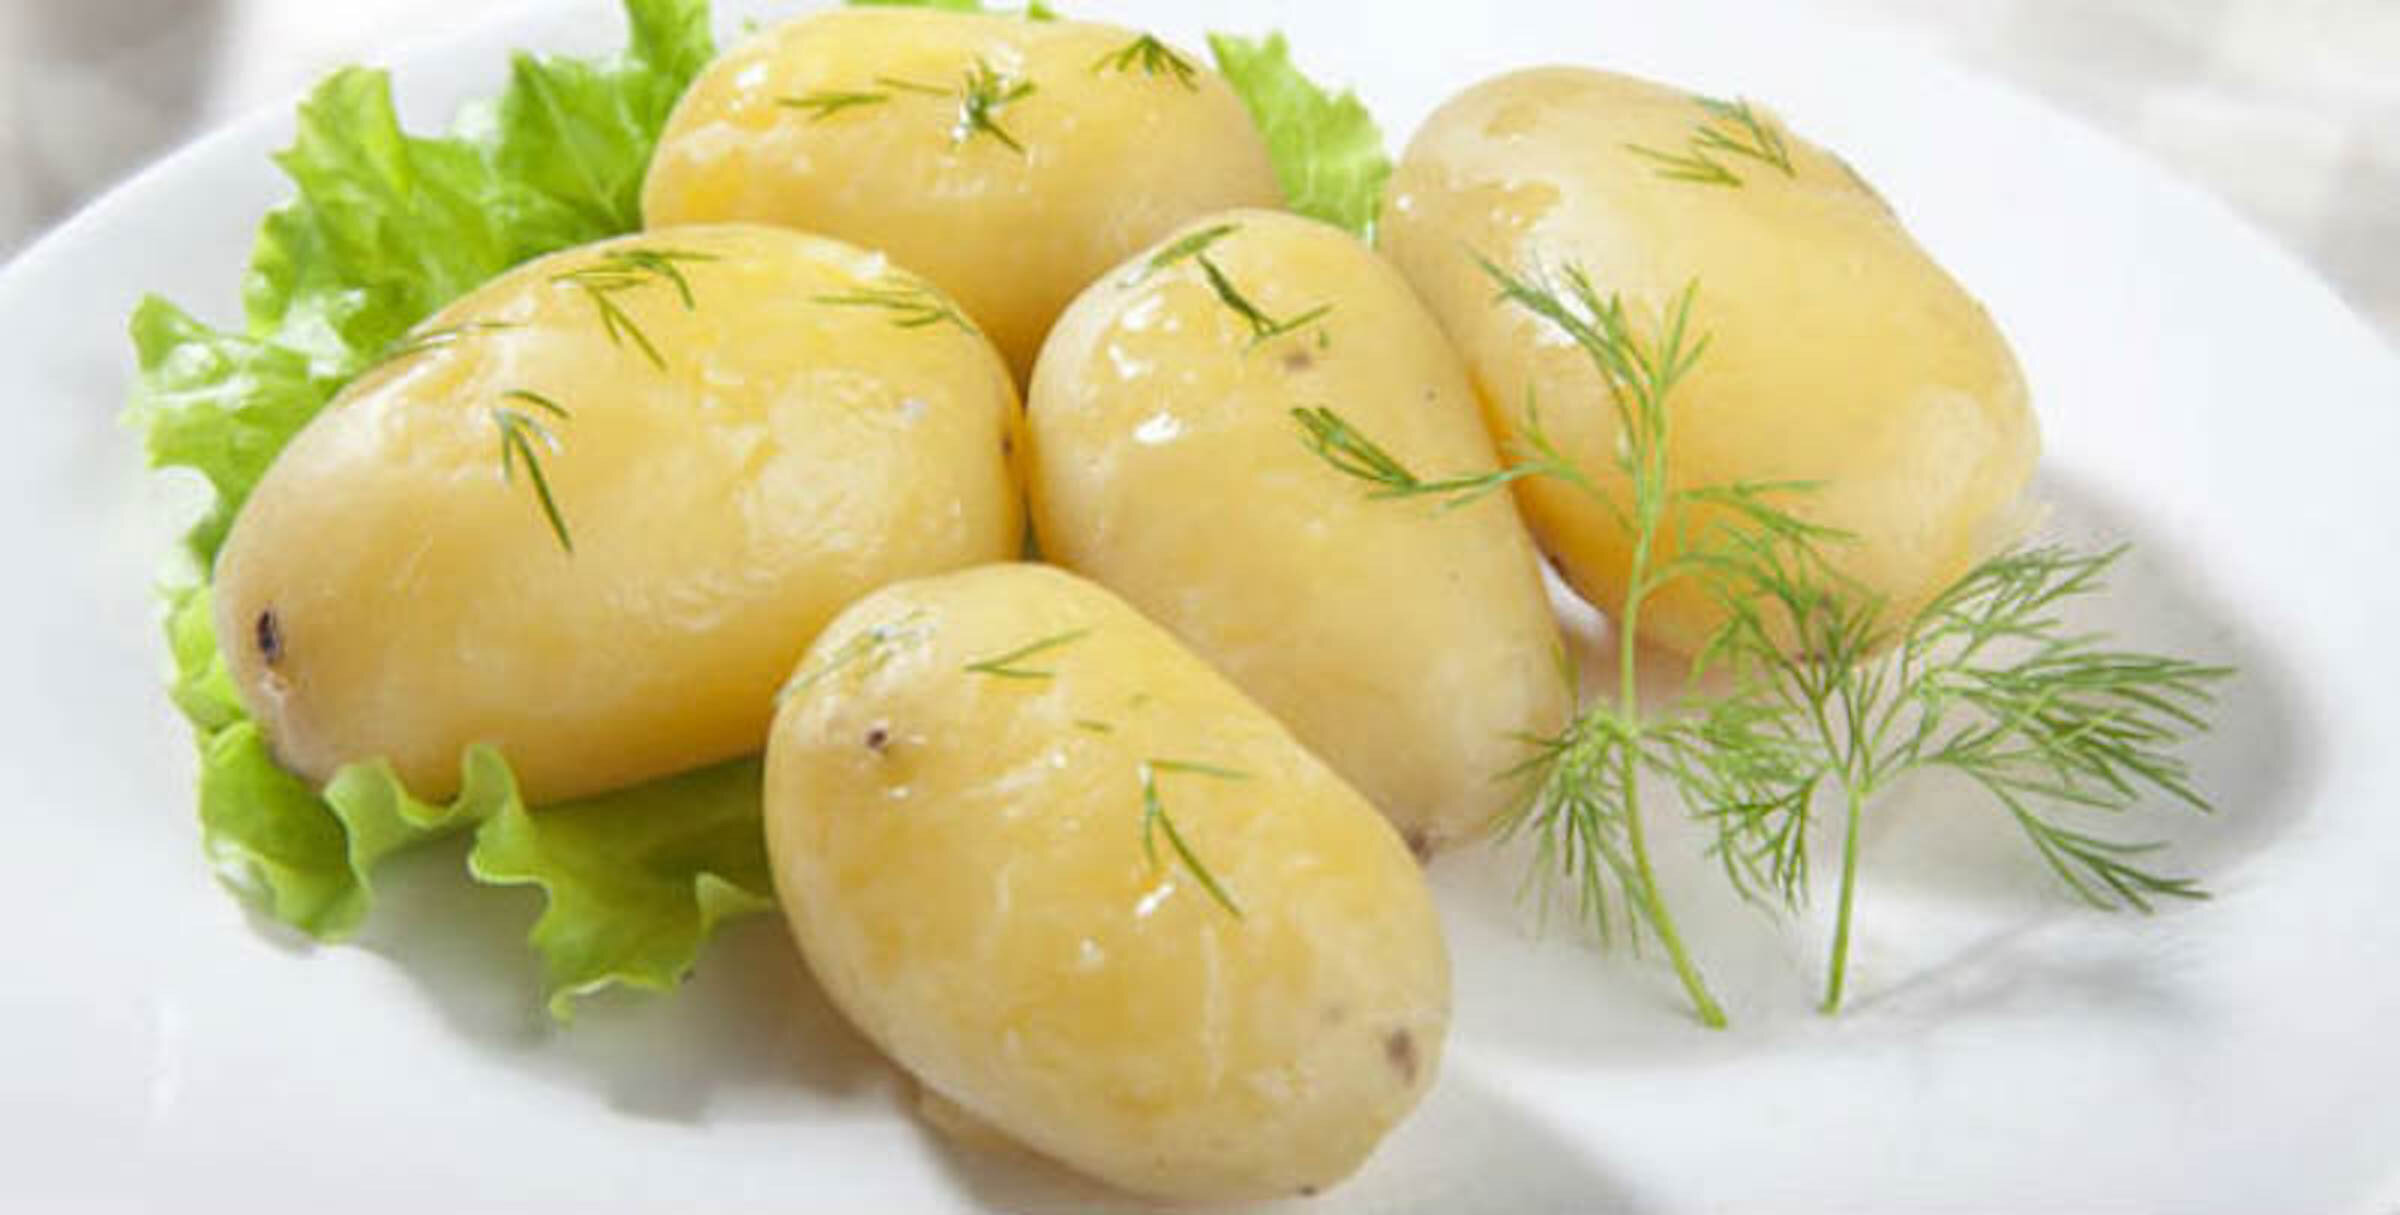 Có nên bảo quản khoai tây luộc trong tủ lạnh? - 1